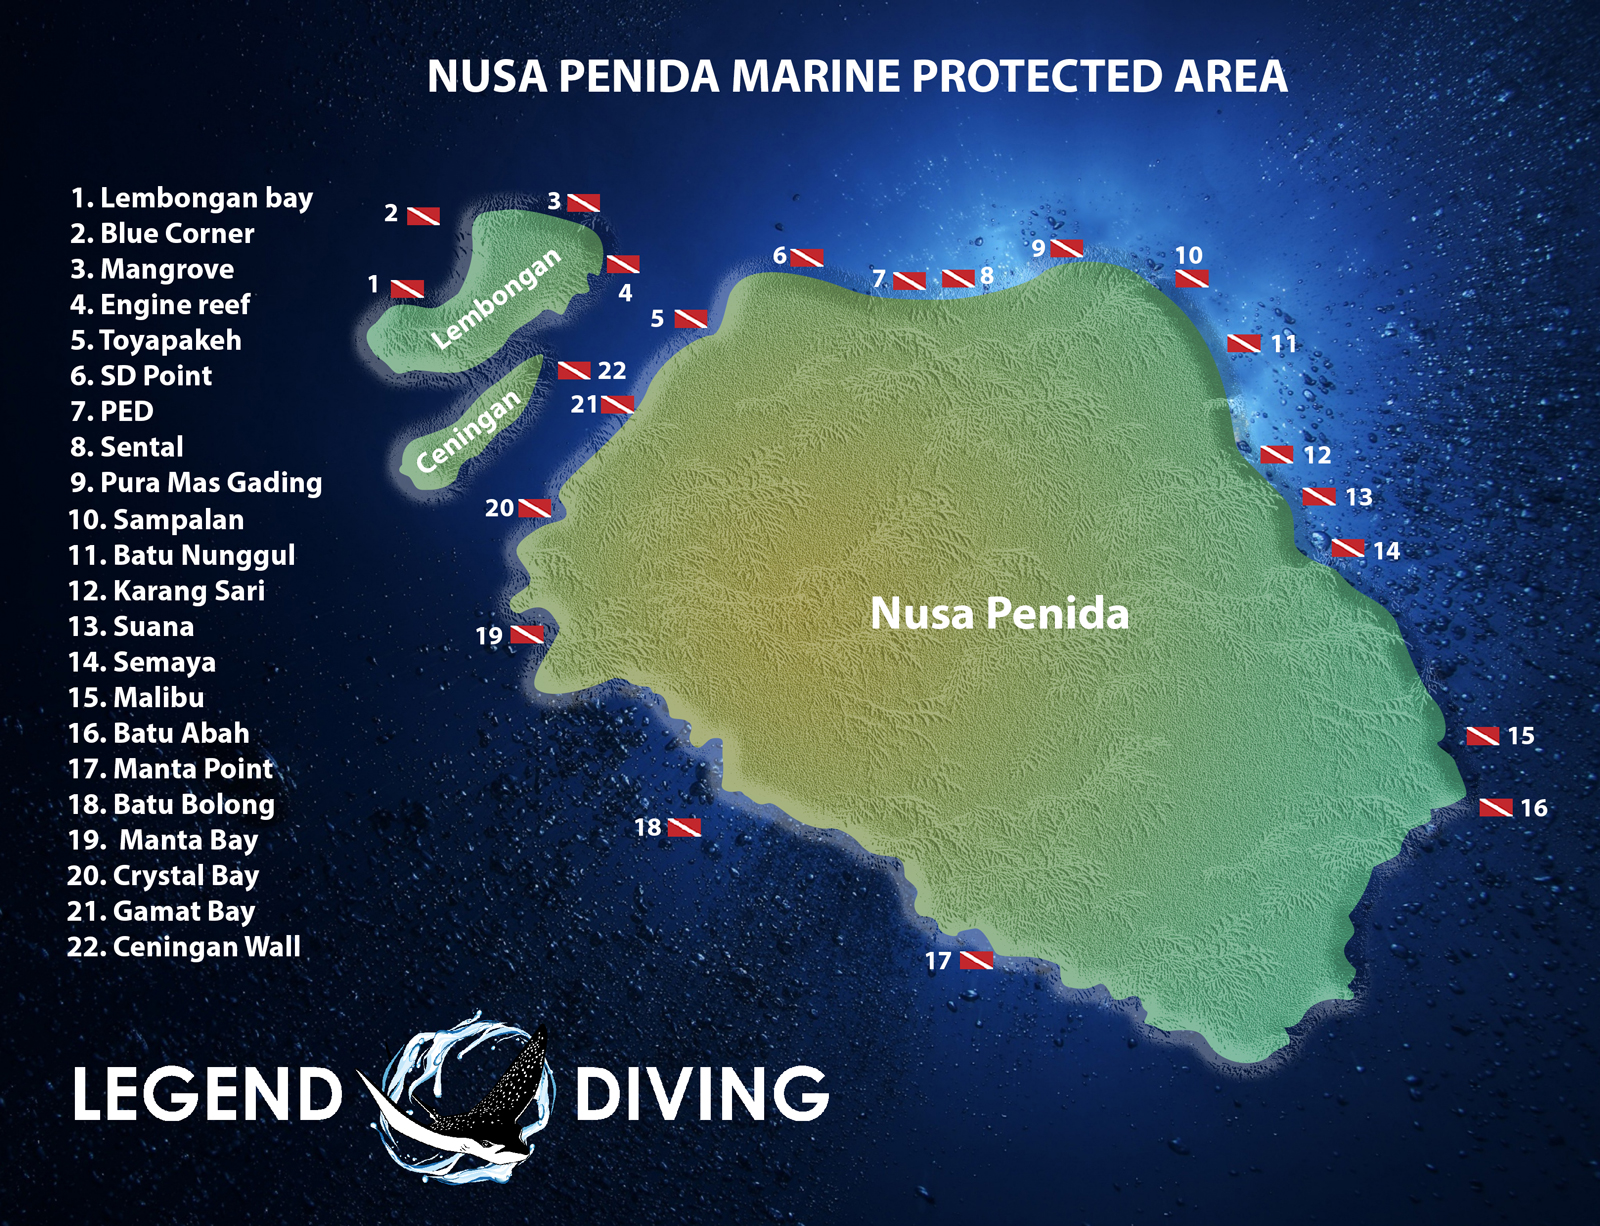 Diving map of Nusa Lembongan and Penida